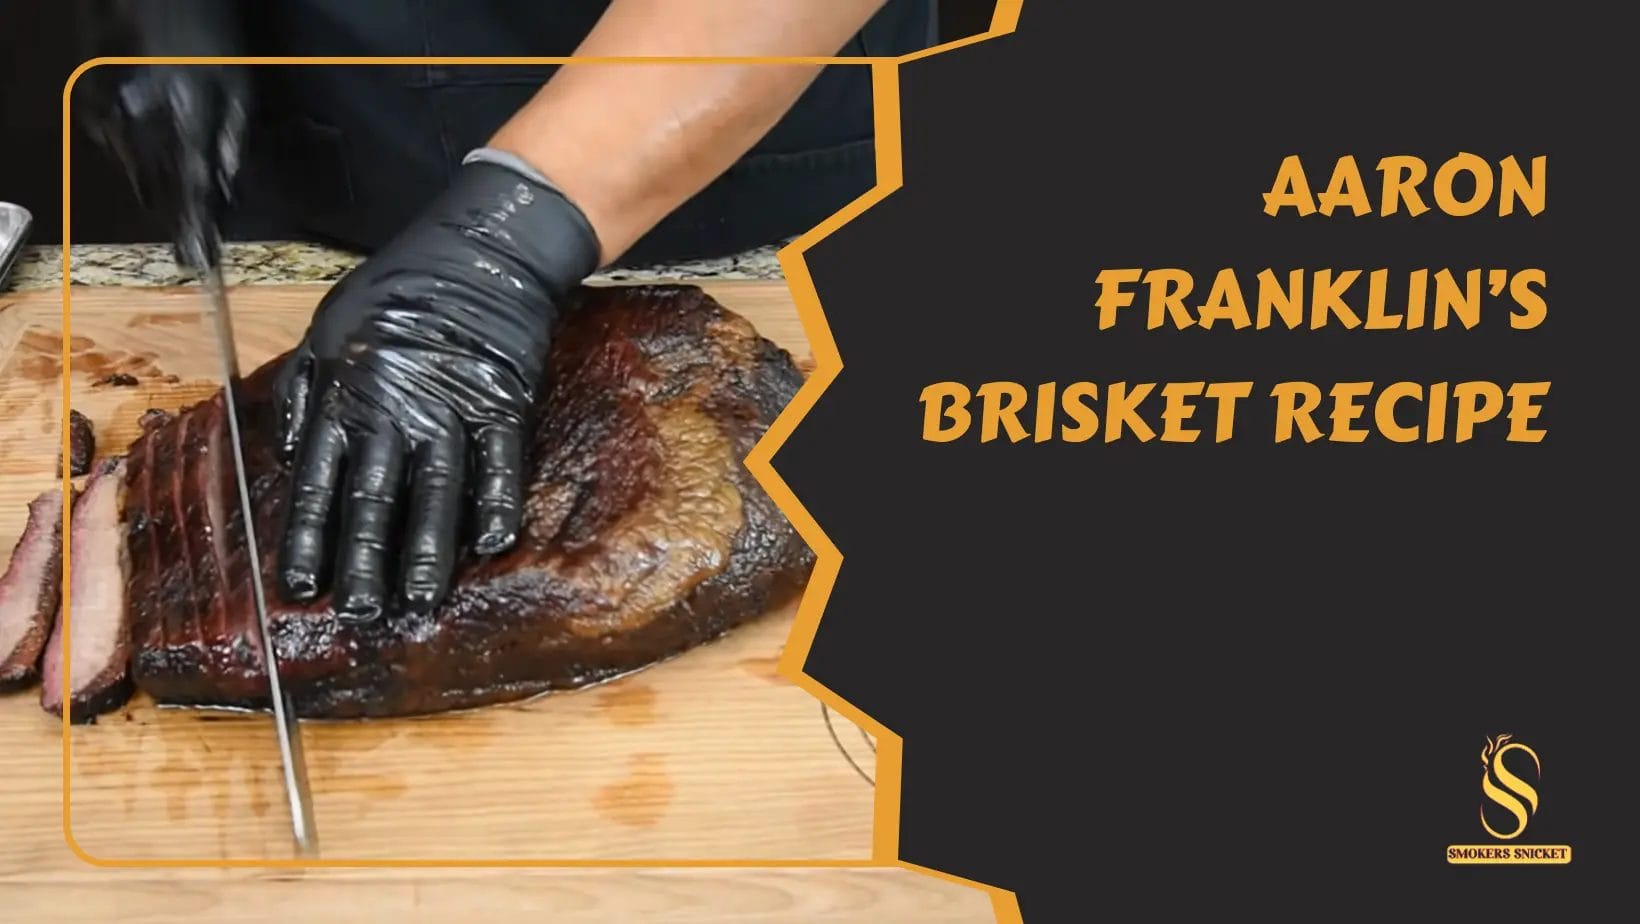 Aaron Franklin’s Brisket Recipe